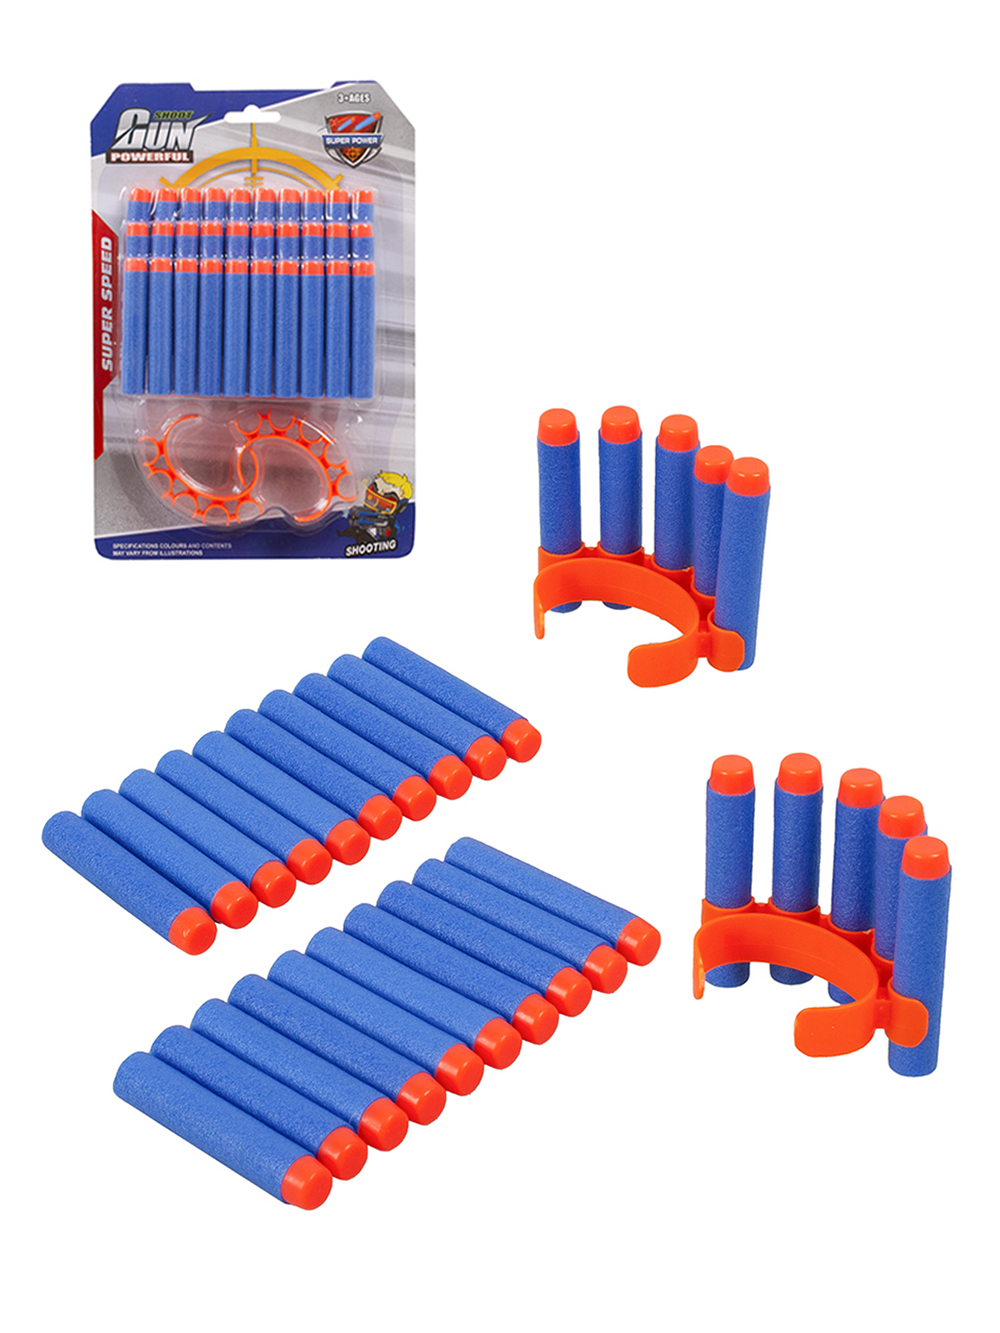 Мягкие пули для игрушечного бластера 694-2 набор 30 штук мягкие шарики пули игрушечные патроны для бластера blaze storm 20 штук zecong toys zc05